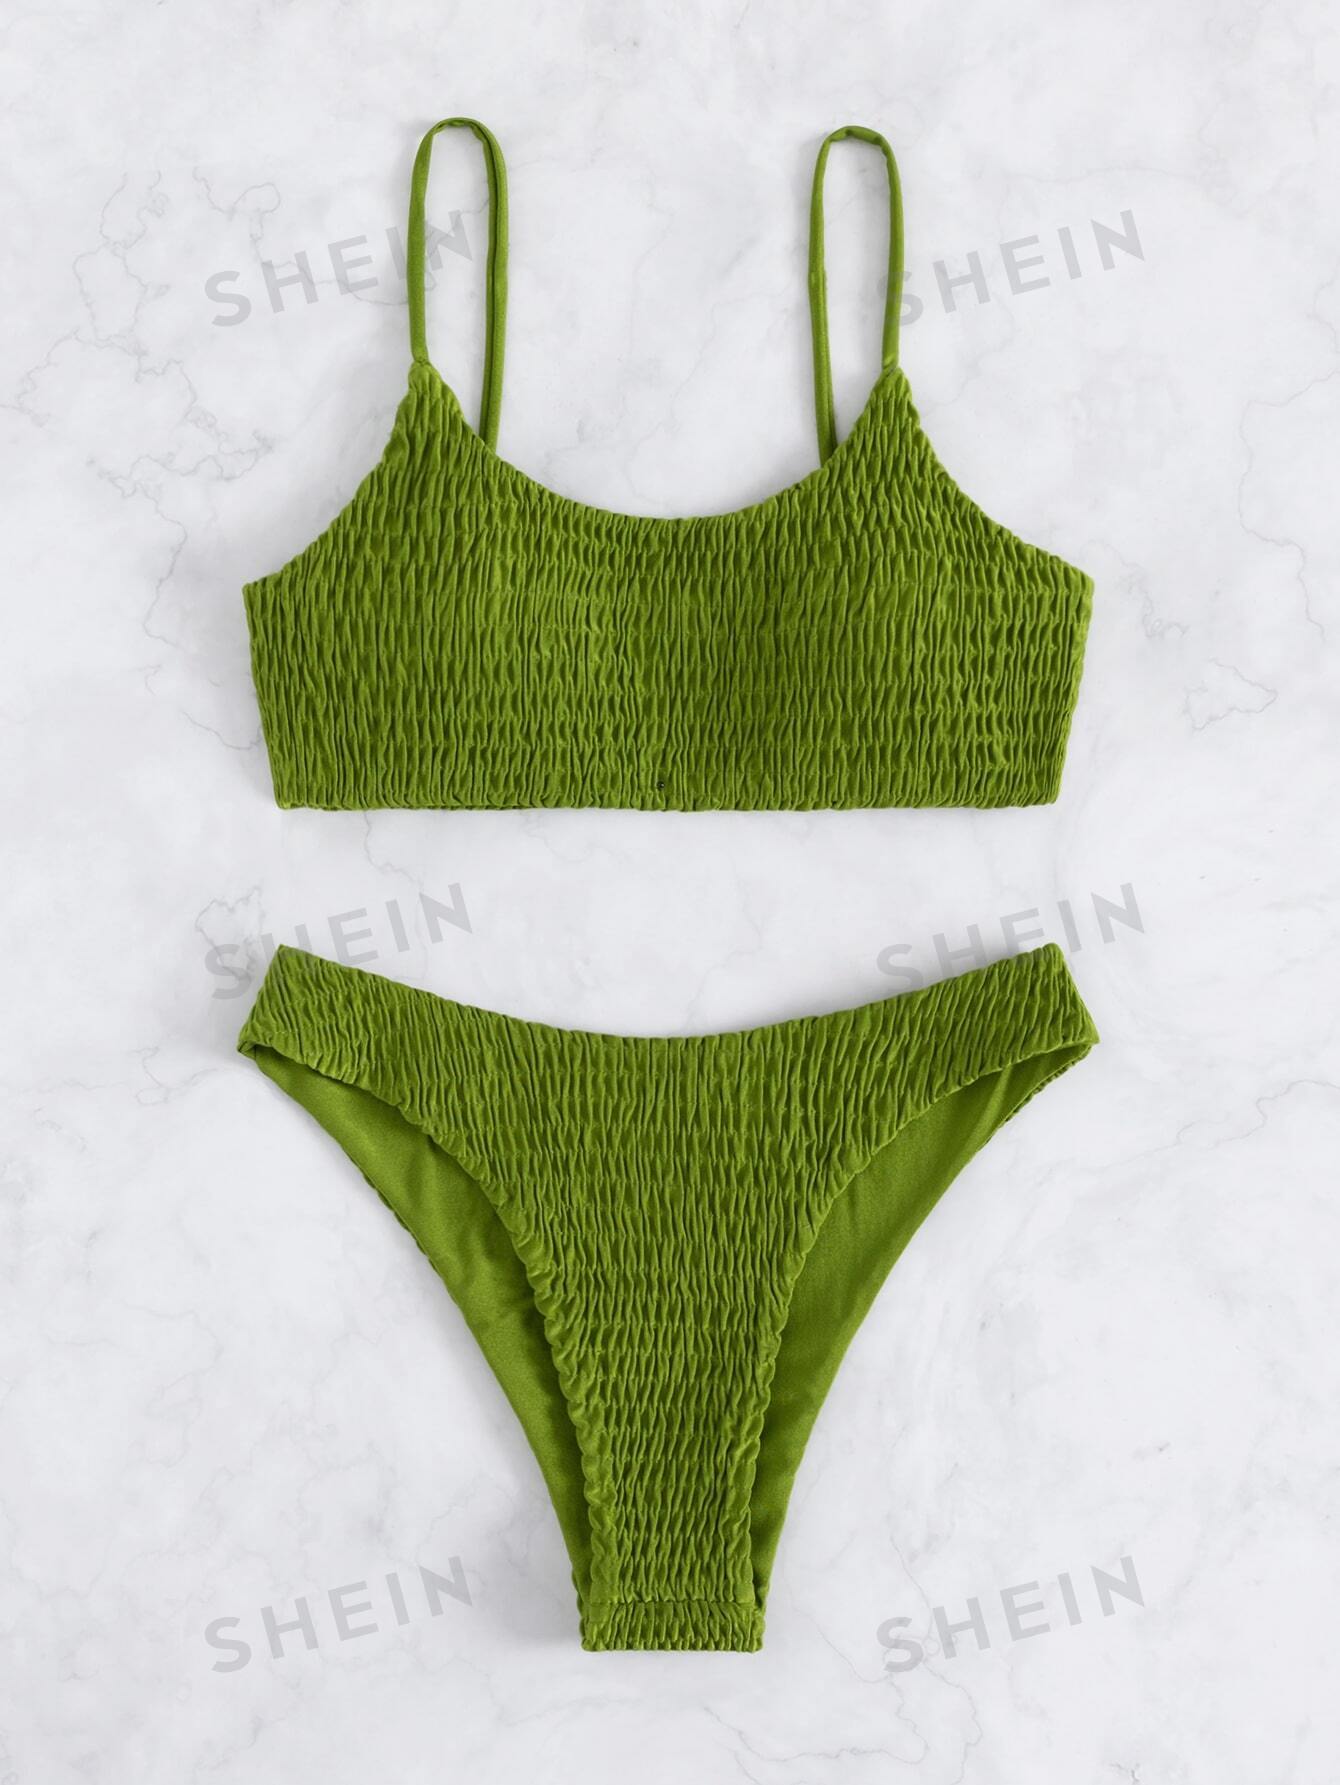 SHEIN Swim Basics Однотонный комплект бикини с вырезом на шее и тонкими бретелями, оливково-зеленый двухсекционный купальник shein swim vcay авторские права приобретены многоцветный